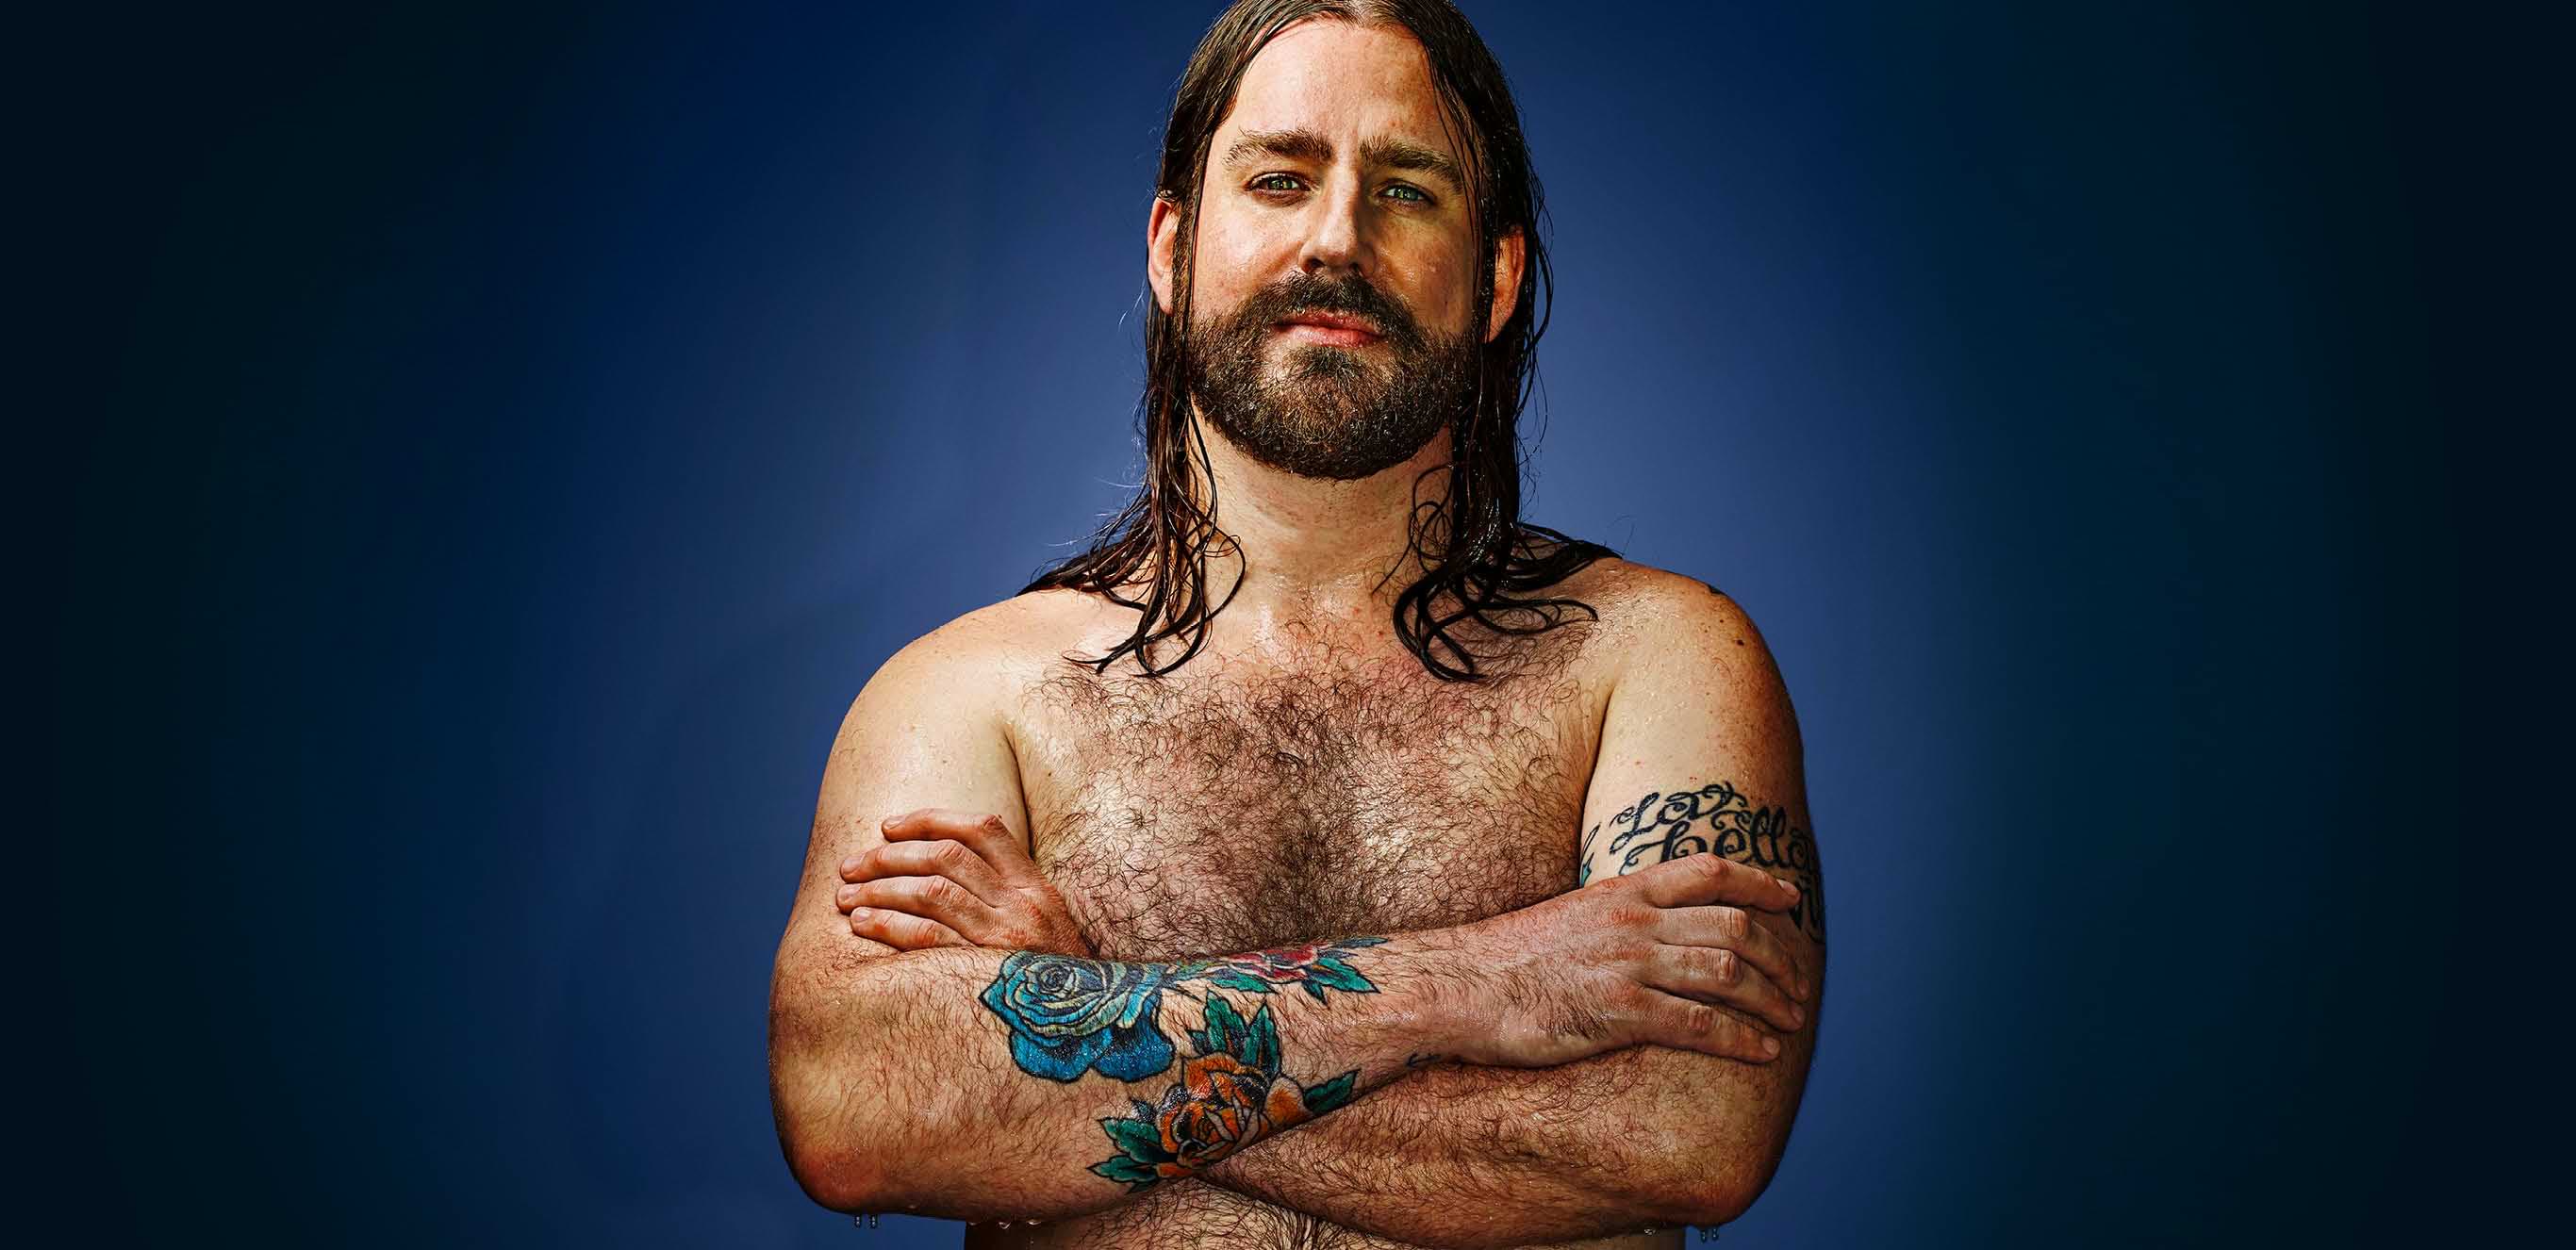 Mann mit Tattoos auf den verschränkten Armen in Badehose.